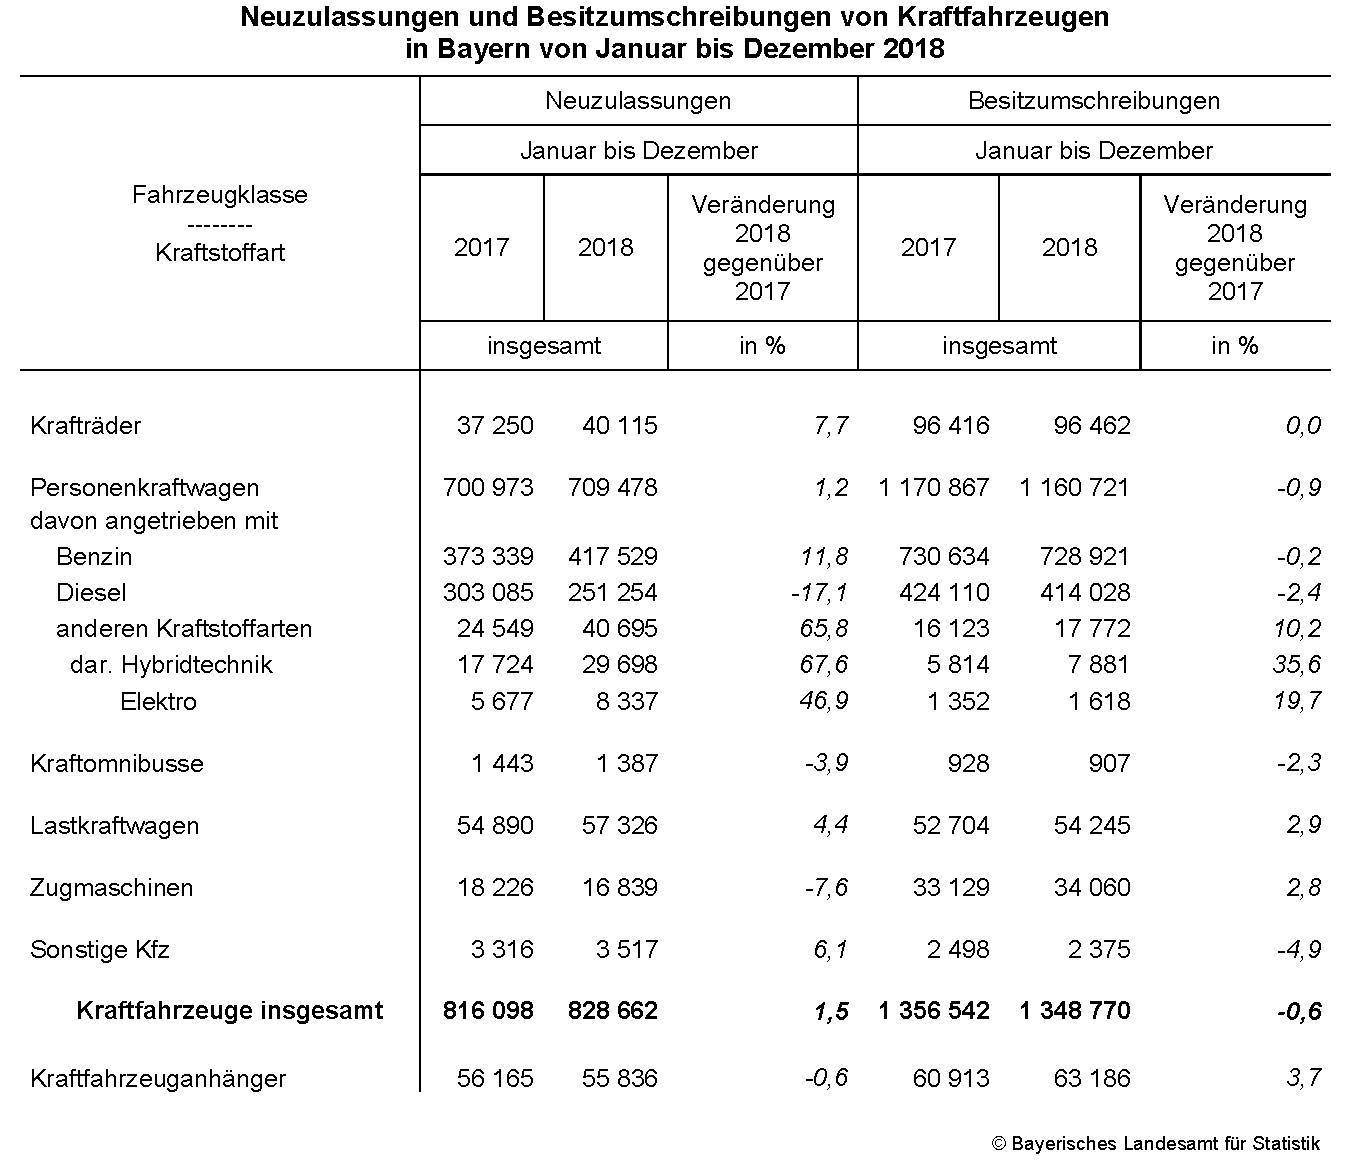 Neuzulassungen und Besitzumschreibungen von Kraftfahrzeugen in Bayern von Januar bis Dezember 2018